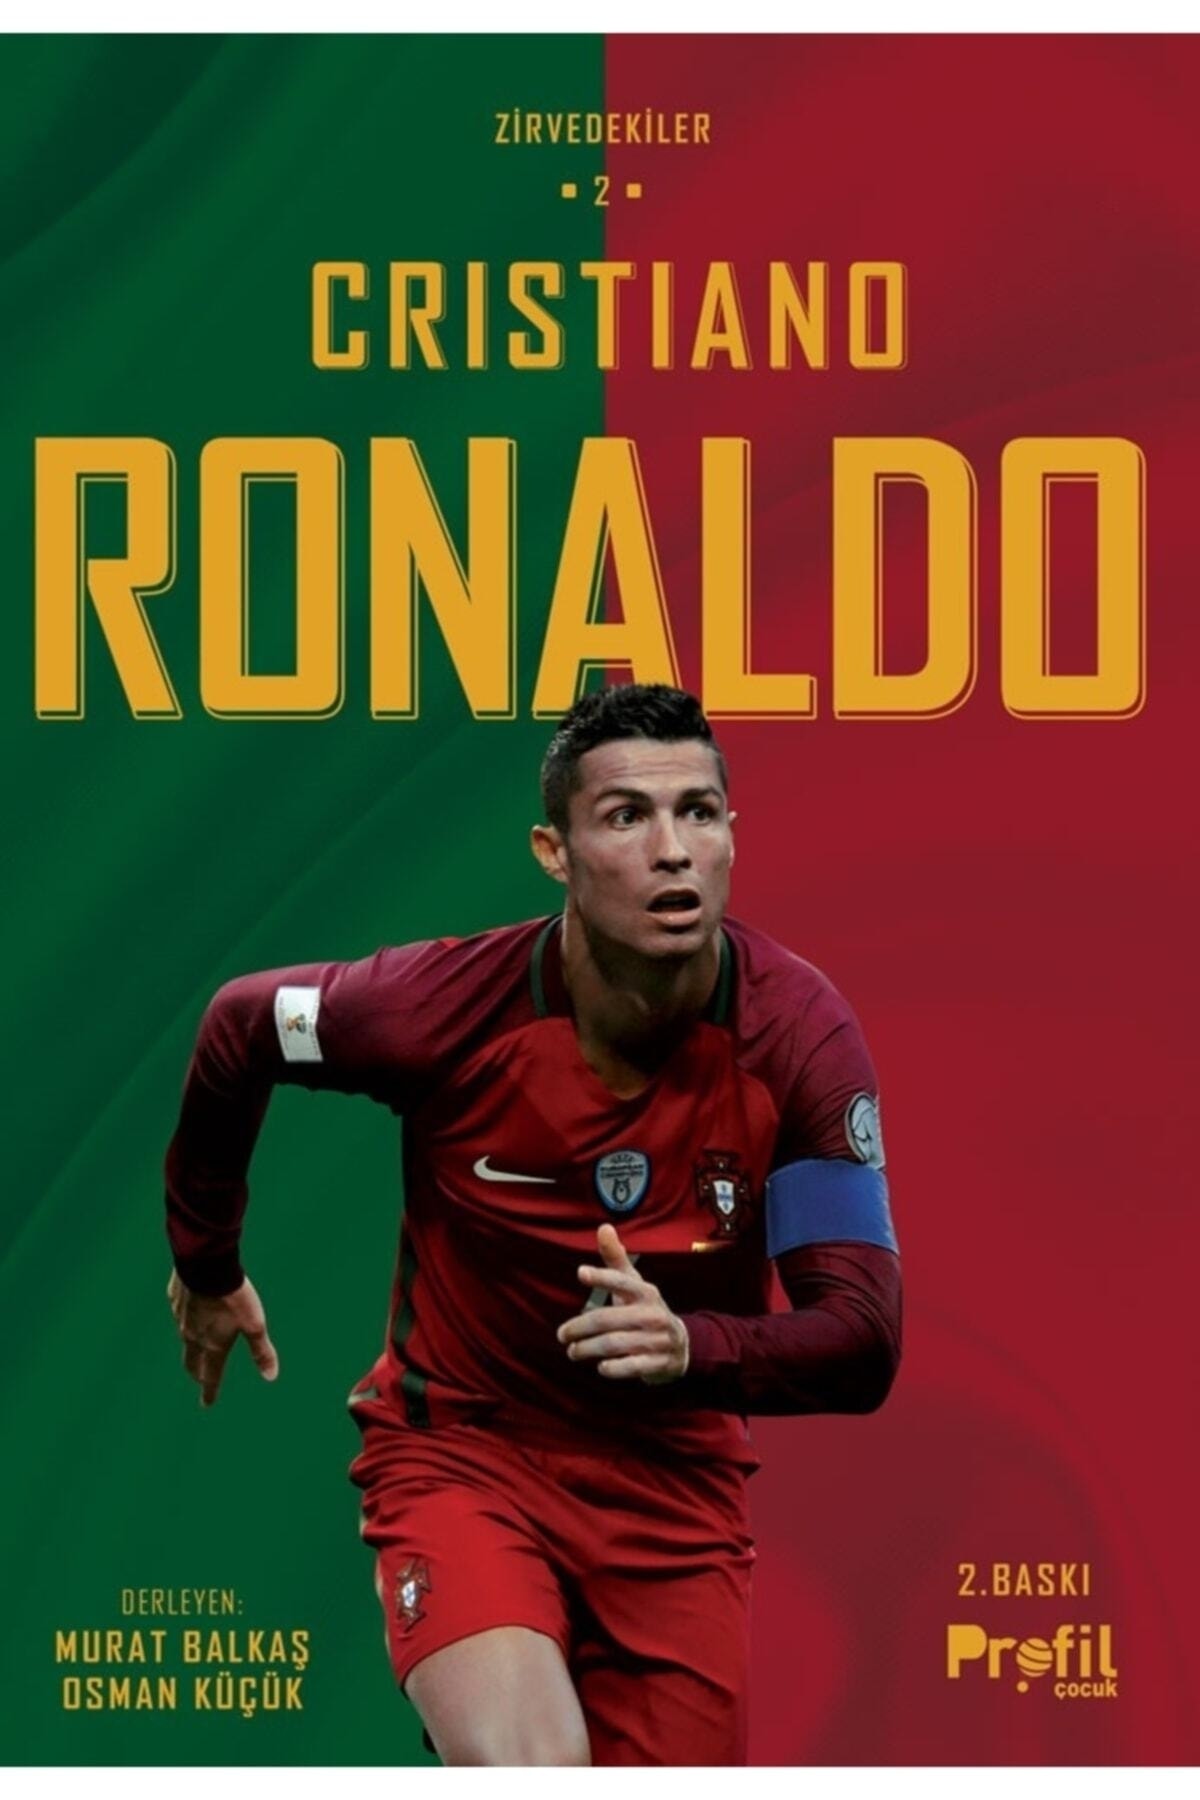 Profil Kitap Cristiano Ronaldo / Zirvedekiler 2 Murat Balkaş Sü